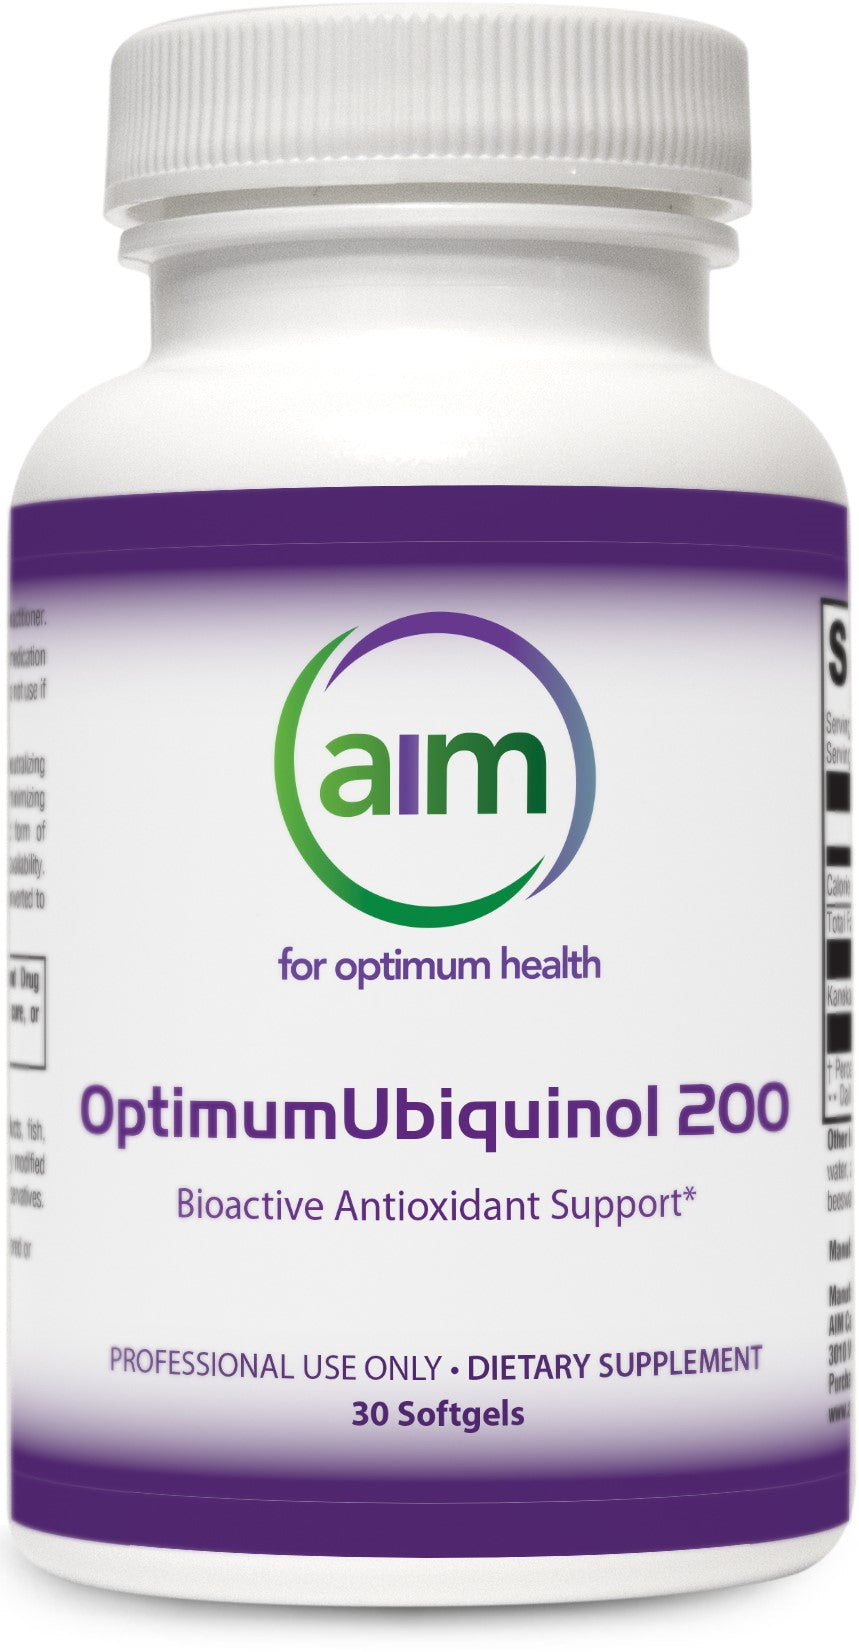 OptimumUbiquinol 200 (30 Softgels)